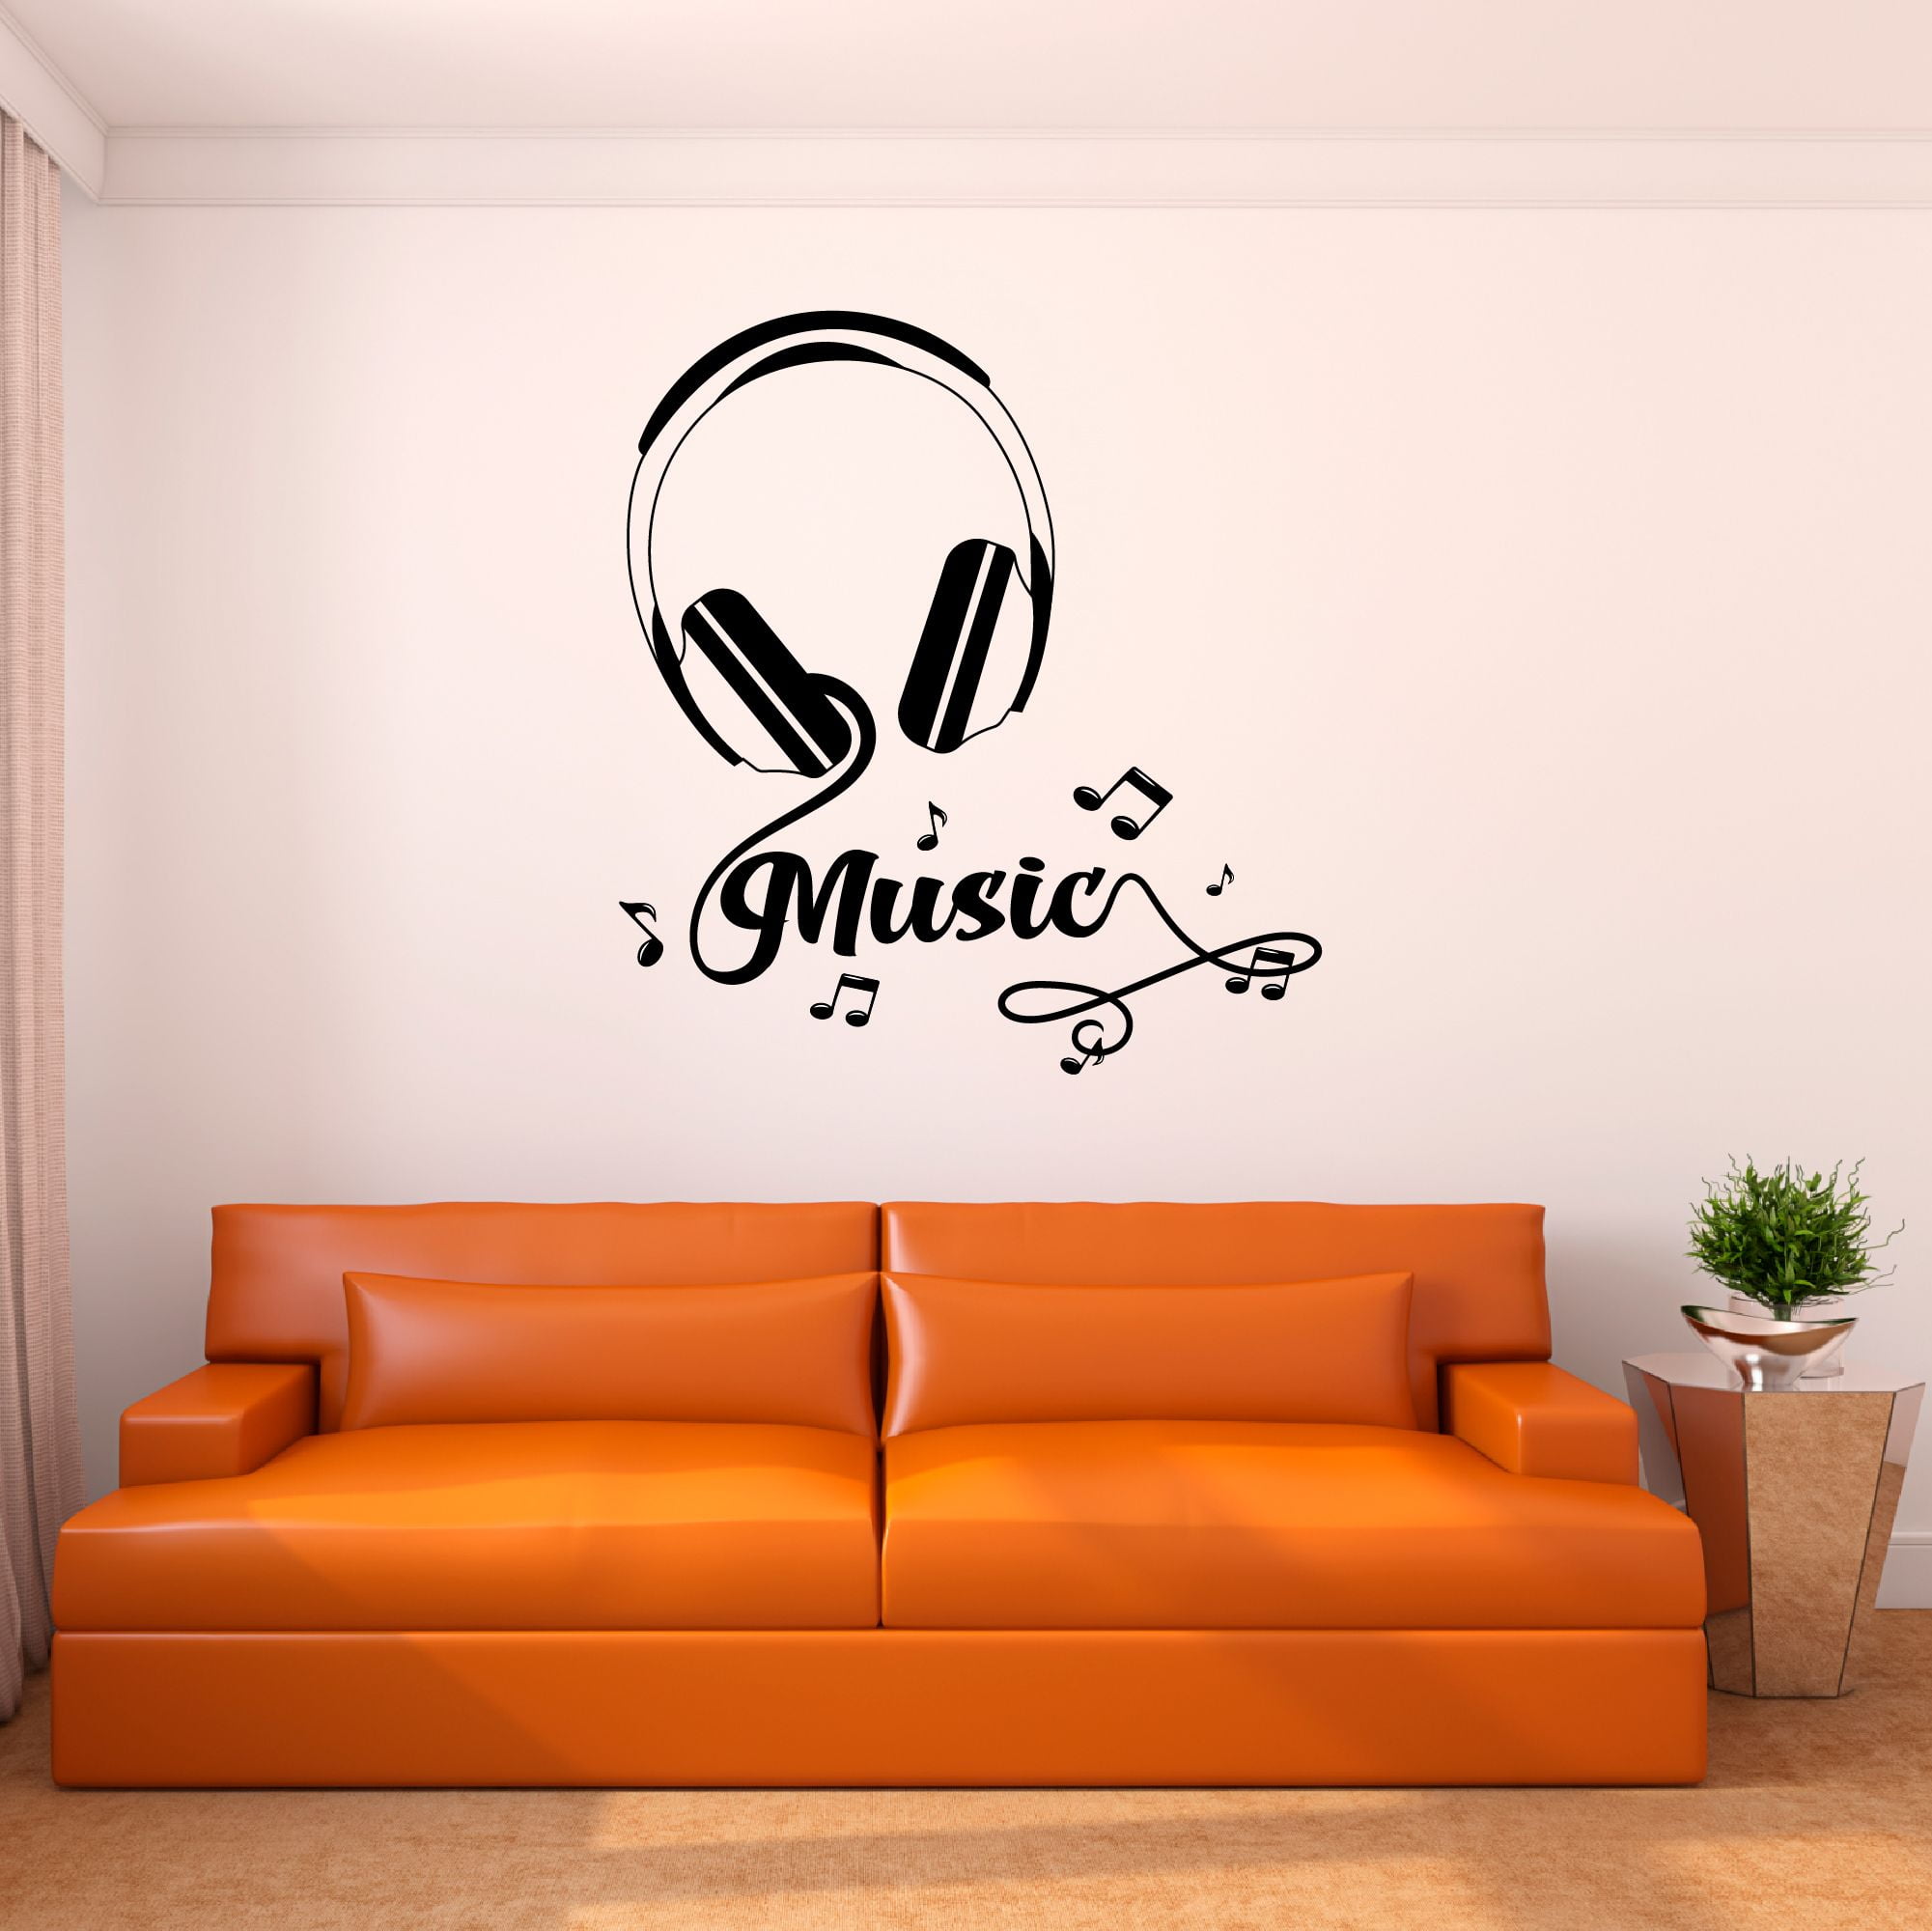 Headphone Vinyl Wall Sticker - Music Art Dj Diecut Weatherproof Decal -  Silhouette Cut Decor Mural - Music Sticker - Headphone Sticker